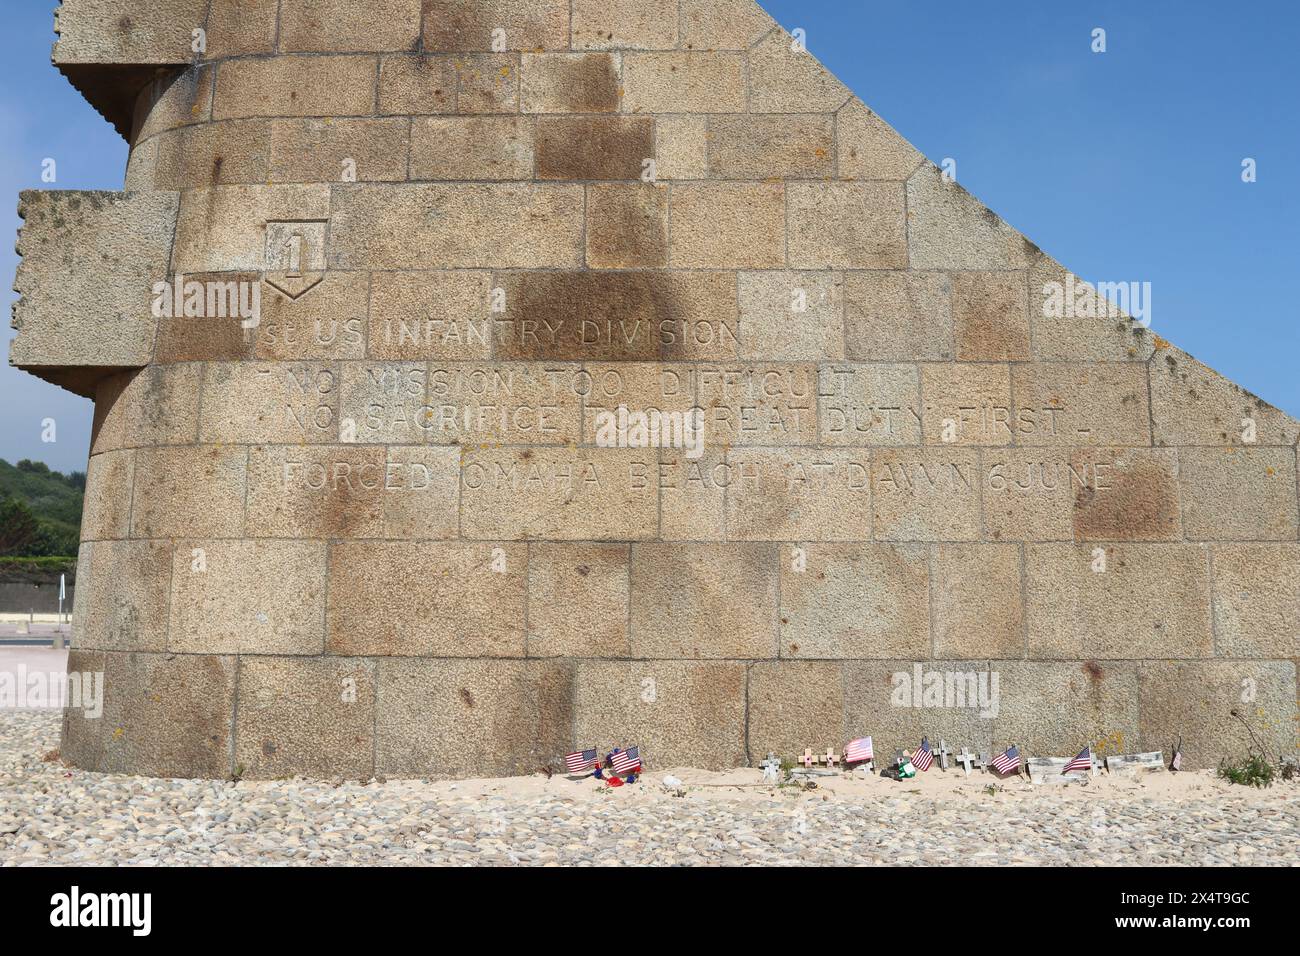 Monument am Strand von Omaha in Frankreich. Amerikanische Fahnen auf dem Boden. Keine sichtbaren Personen. Stockfoto